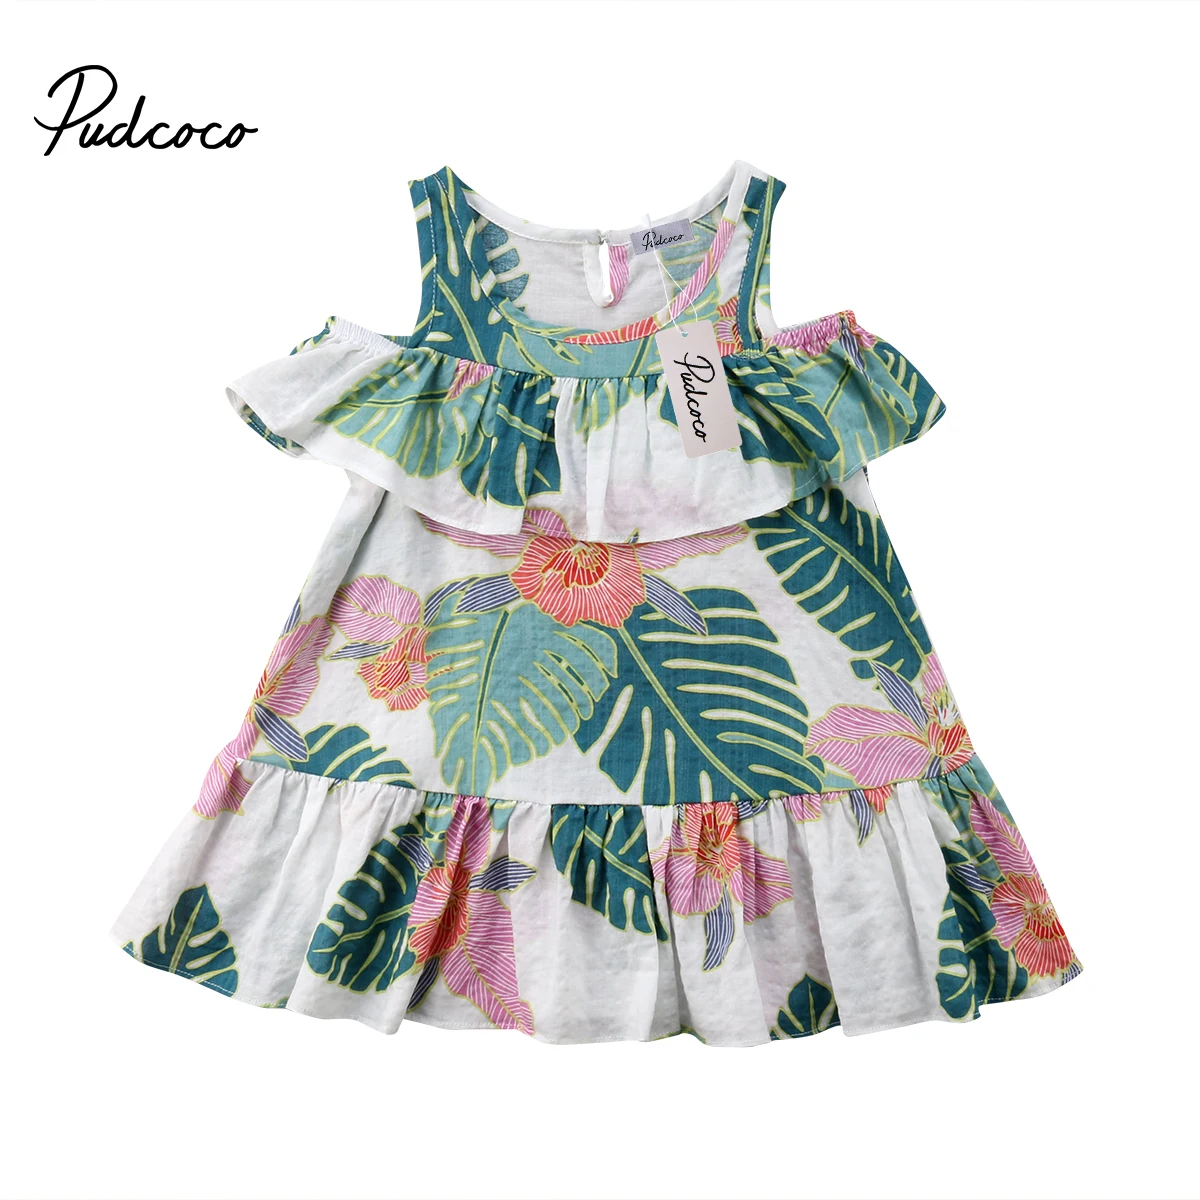 Pudcoco/Детское платье принцессы с открытыми плечами и принтом листьев для маленьких девочек 1-6 лет, Helen115 - Цвет: Зеленый